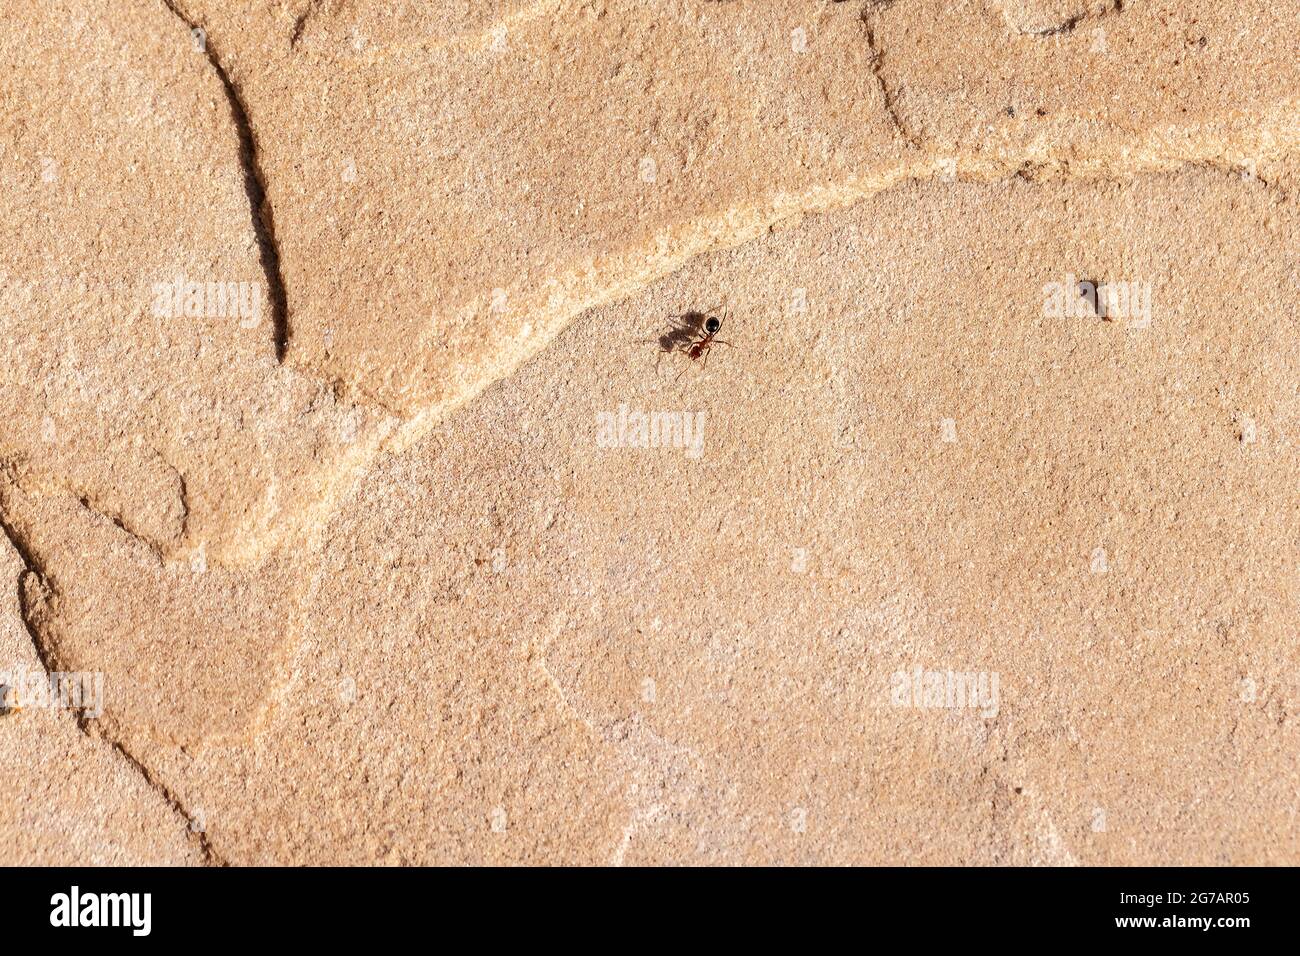 Rot-schwarze Formica-Ameise, die an einem Sommertag in Arizona auf einem Steinboden läuft Stockfoto